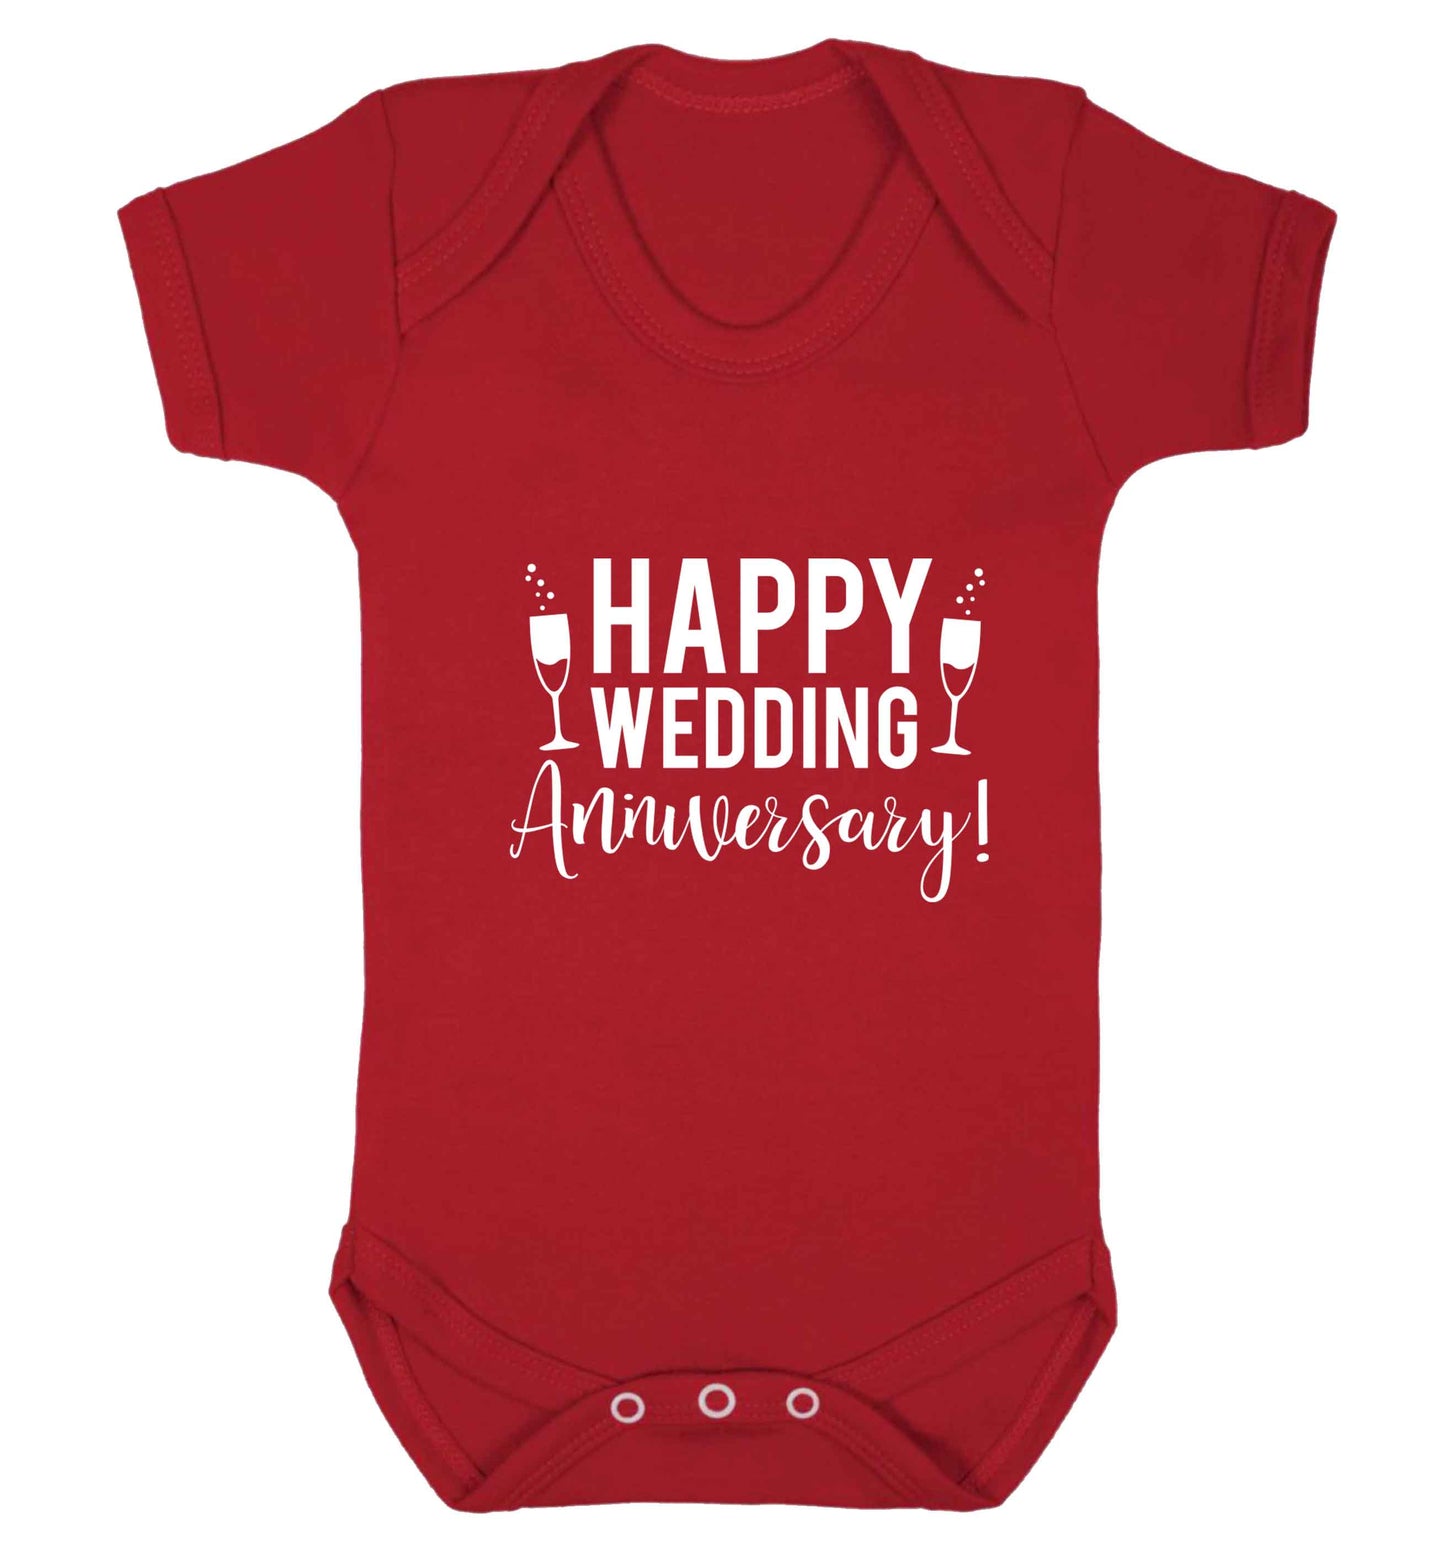 Happy wedding anniversary! baby vest red 18-24 months